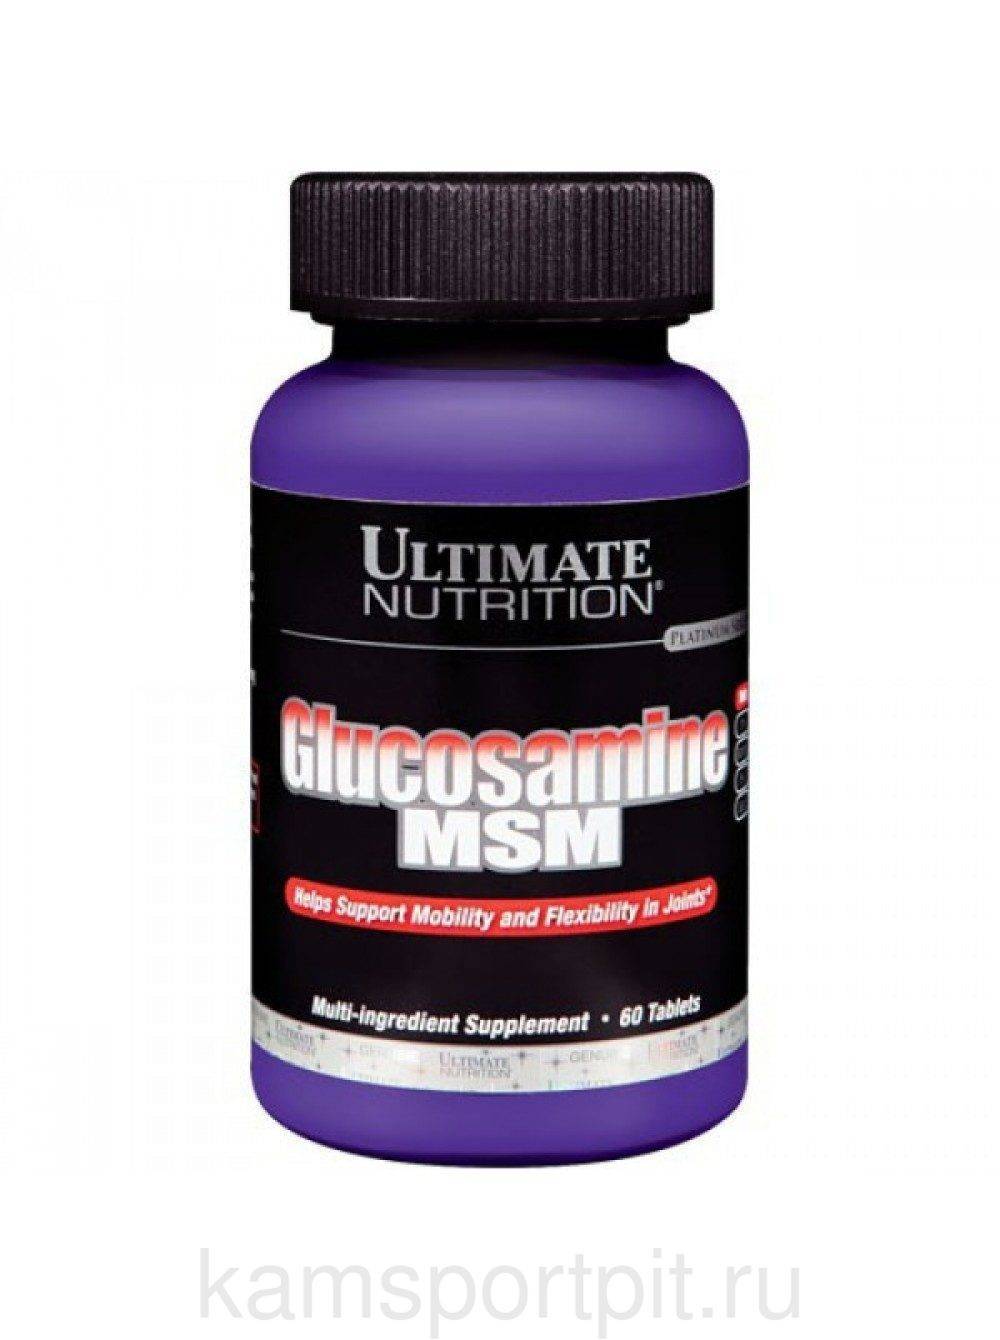 Комплекс глюкозамин-хондроитин-мсм от ultimate nutrition на страже ваших суставов